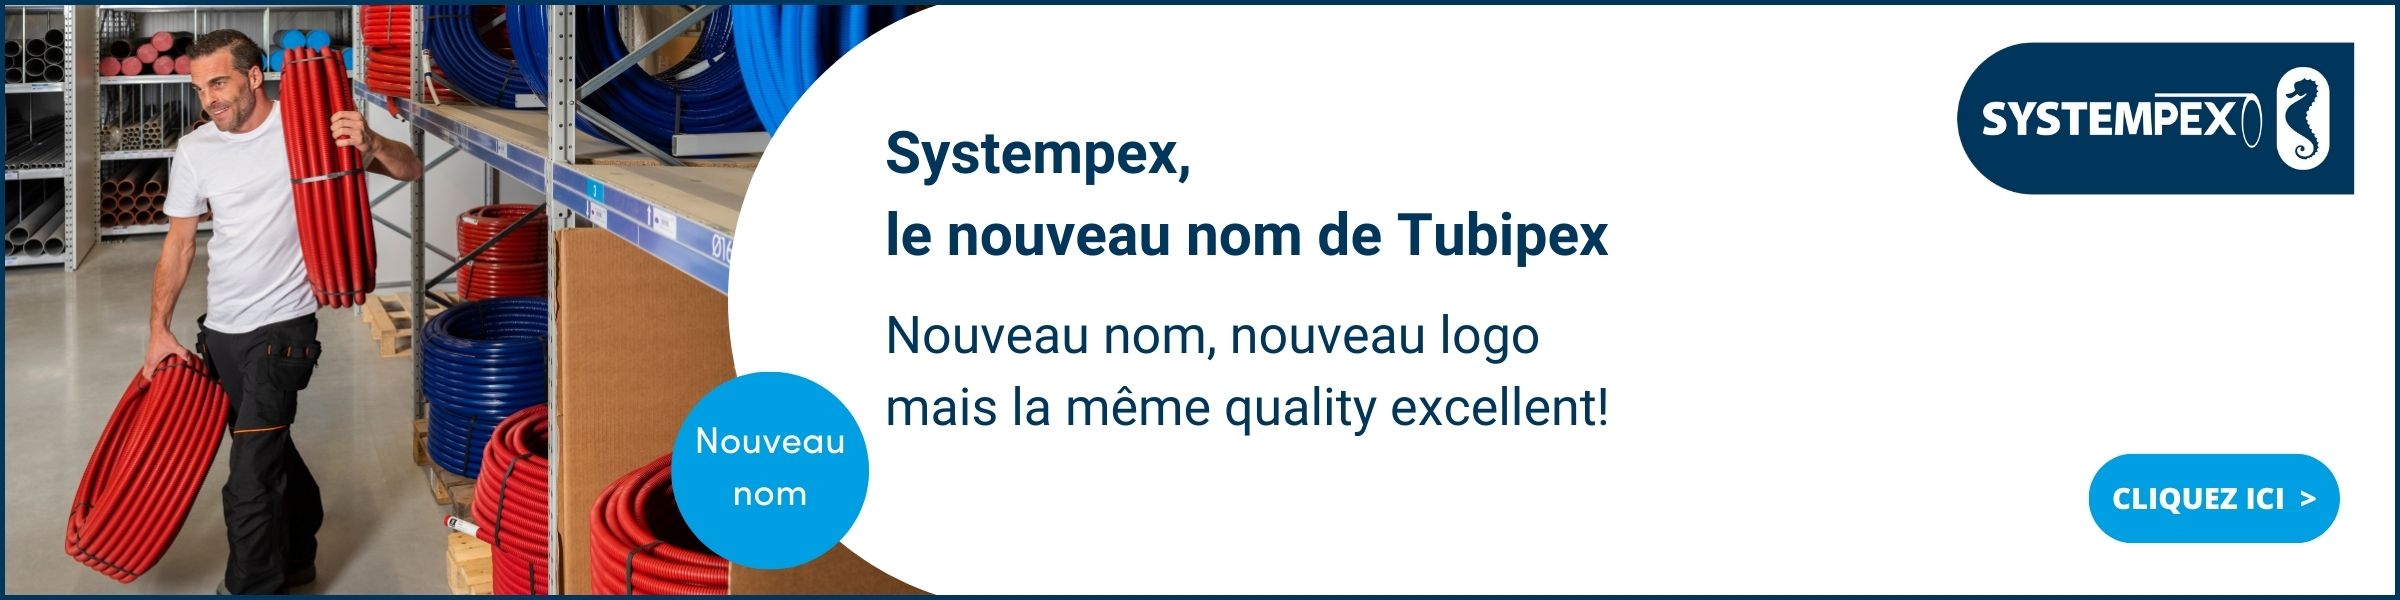 Tubipex Systempex FR.jpg